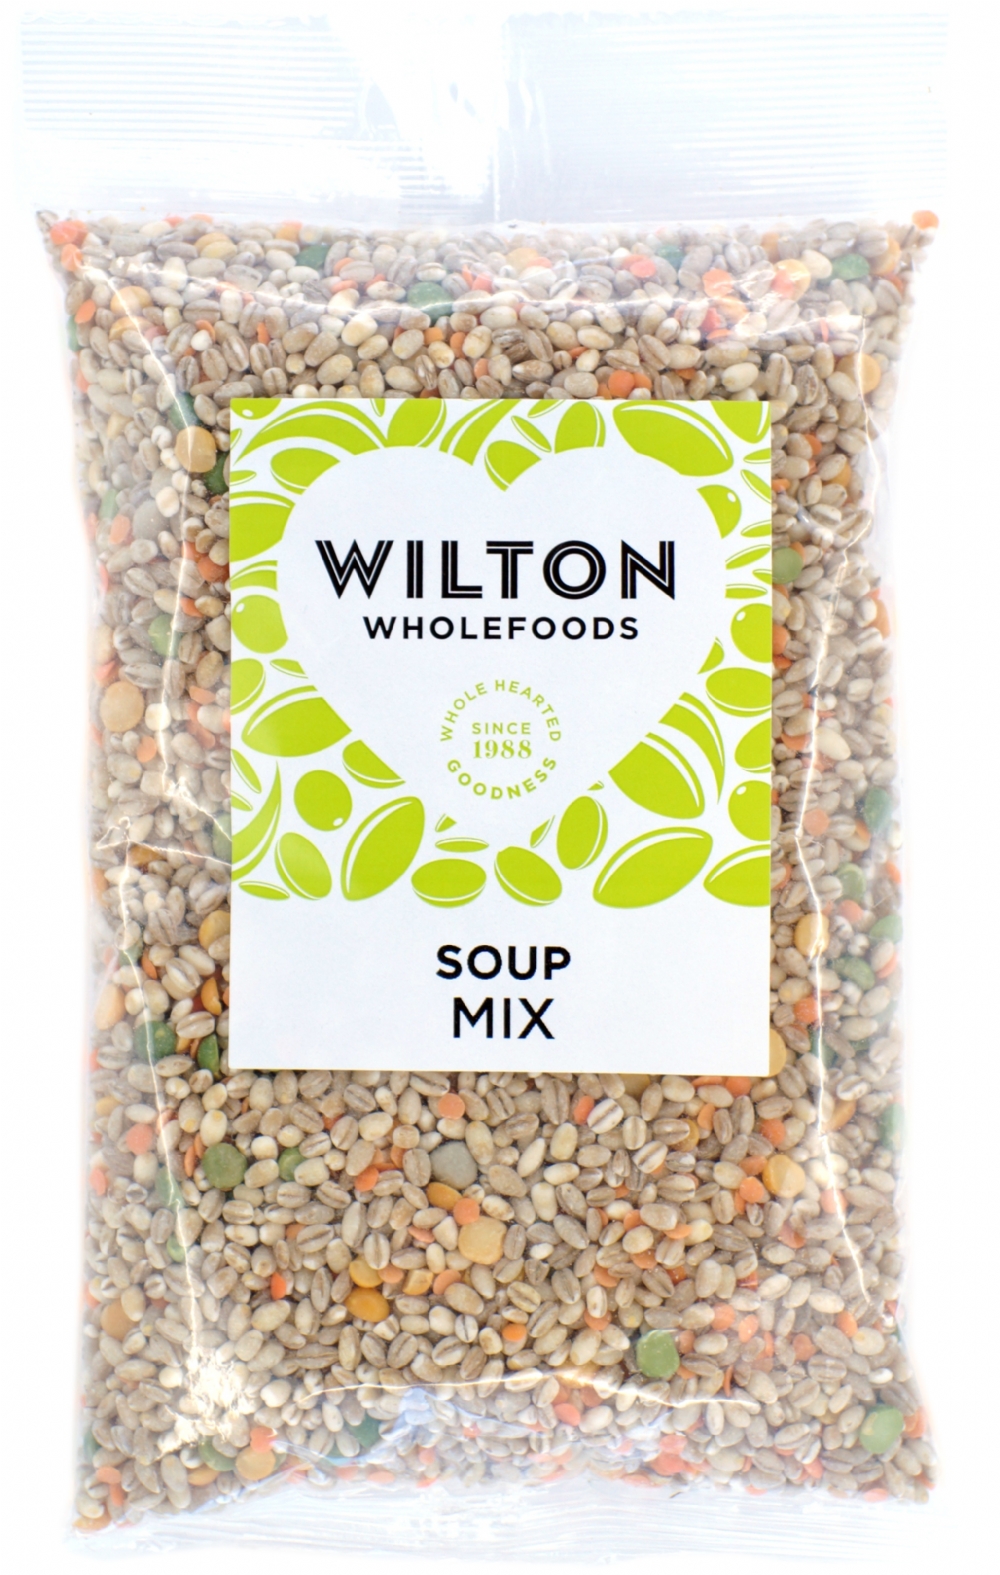 WILTON Soup Mix 500g